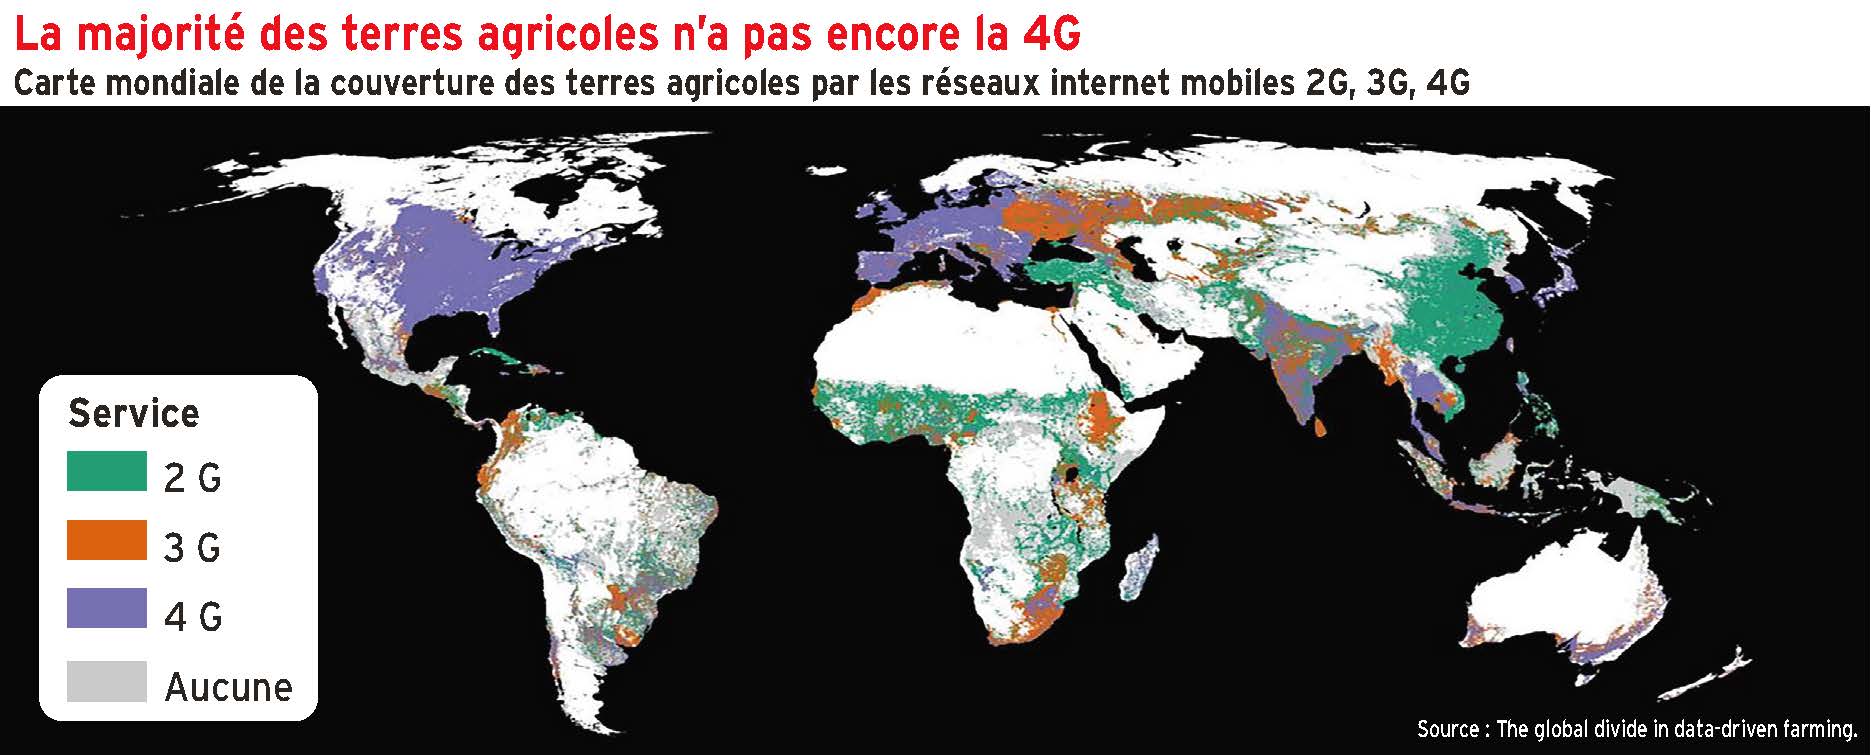 La majorité des terres agricoles mondiales sans 4G